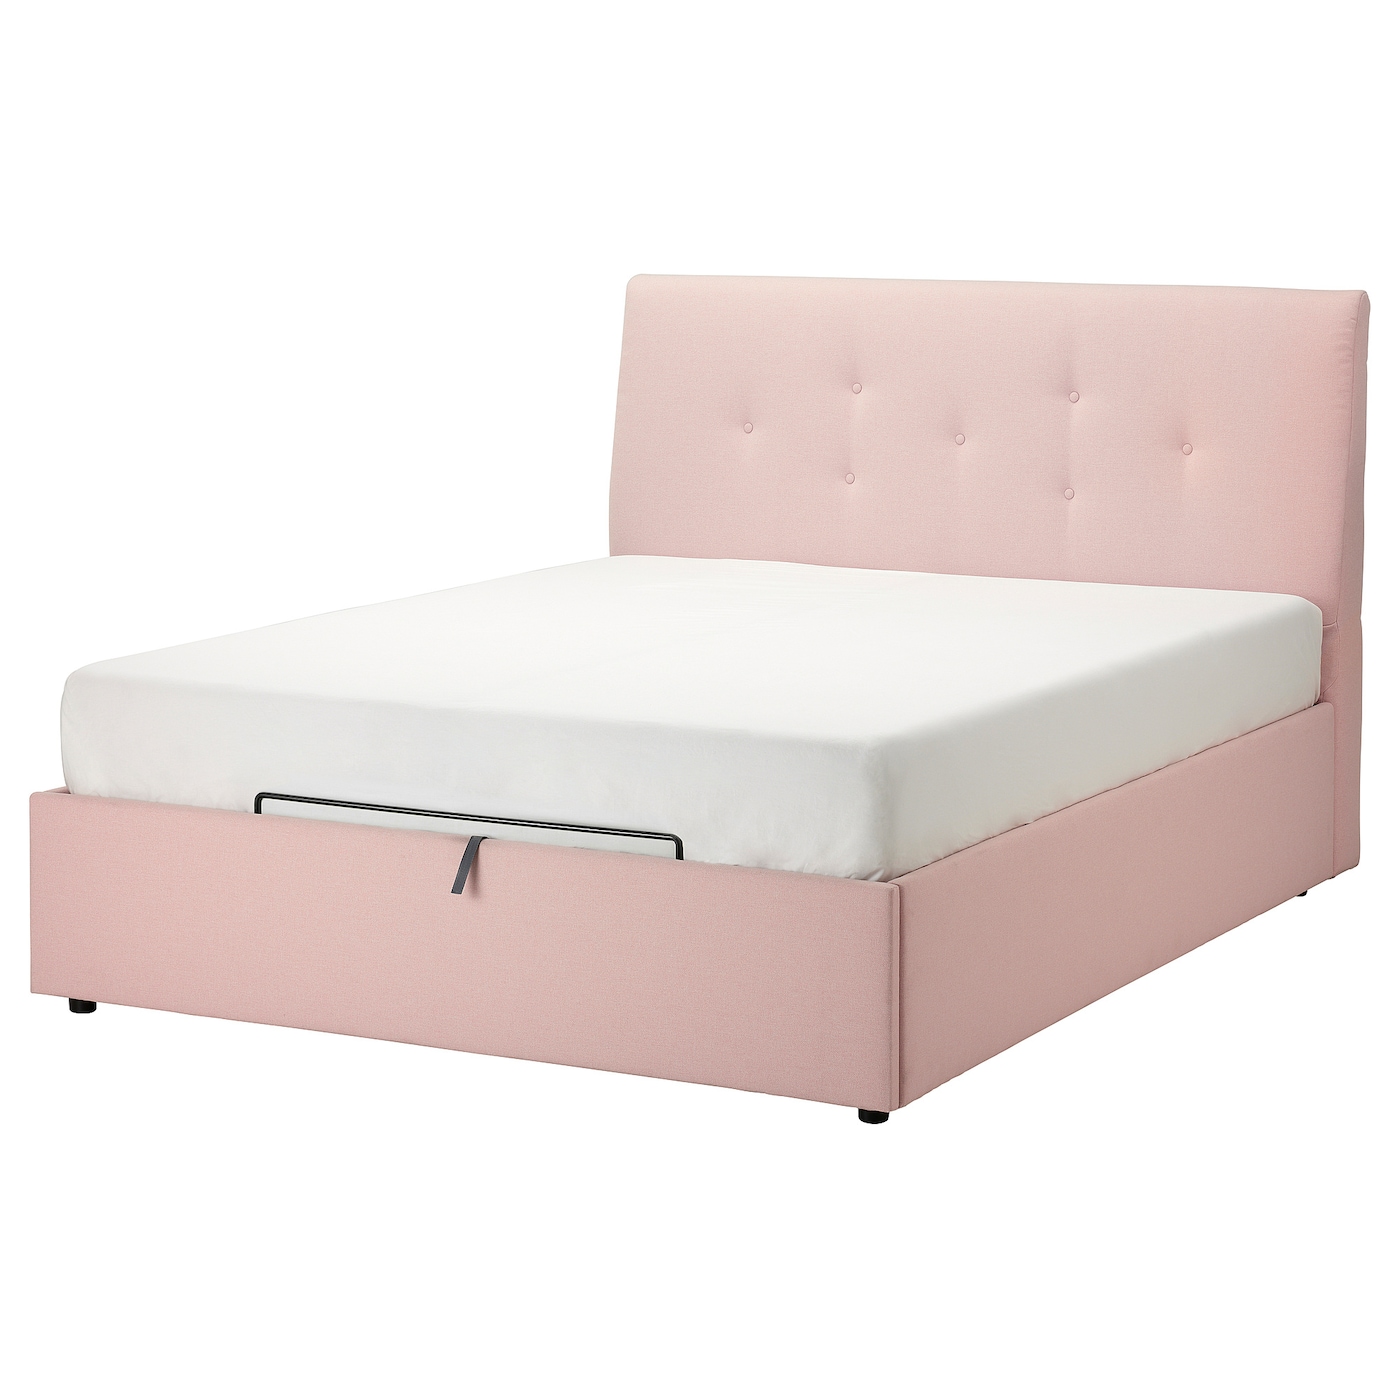 Кровать с местом для хранения  - IKEA IDANÄS/IDANAS, 200х160 см, бледно розовая, ИДАНЭС ИКЕА